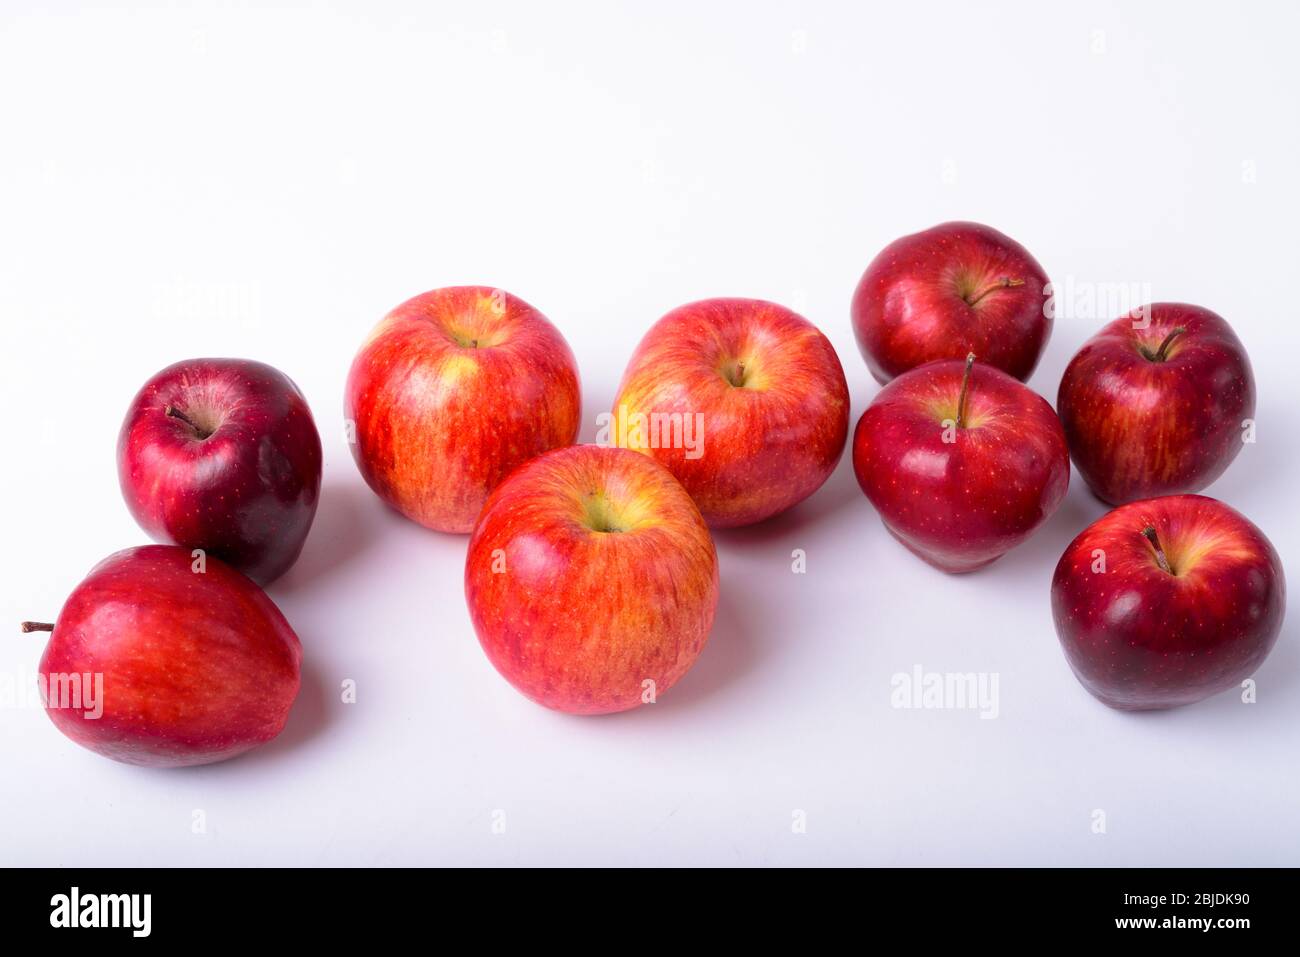 Ritratto di mele rosse fresche su sfondo bianco Foto Stock